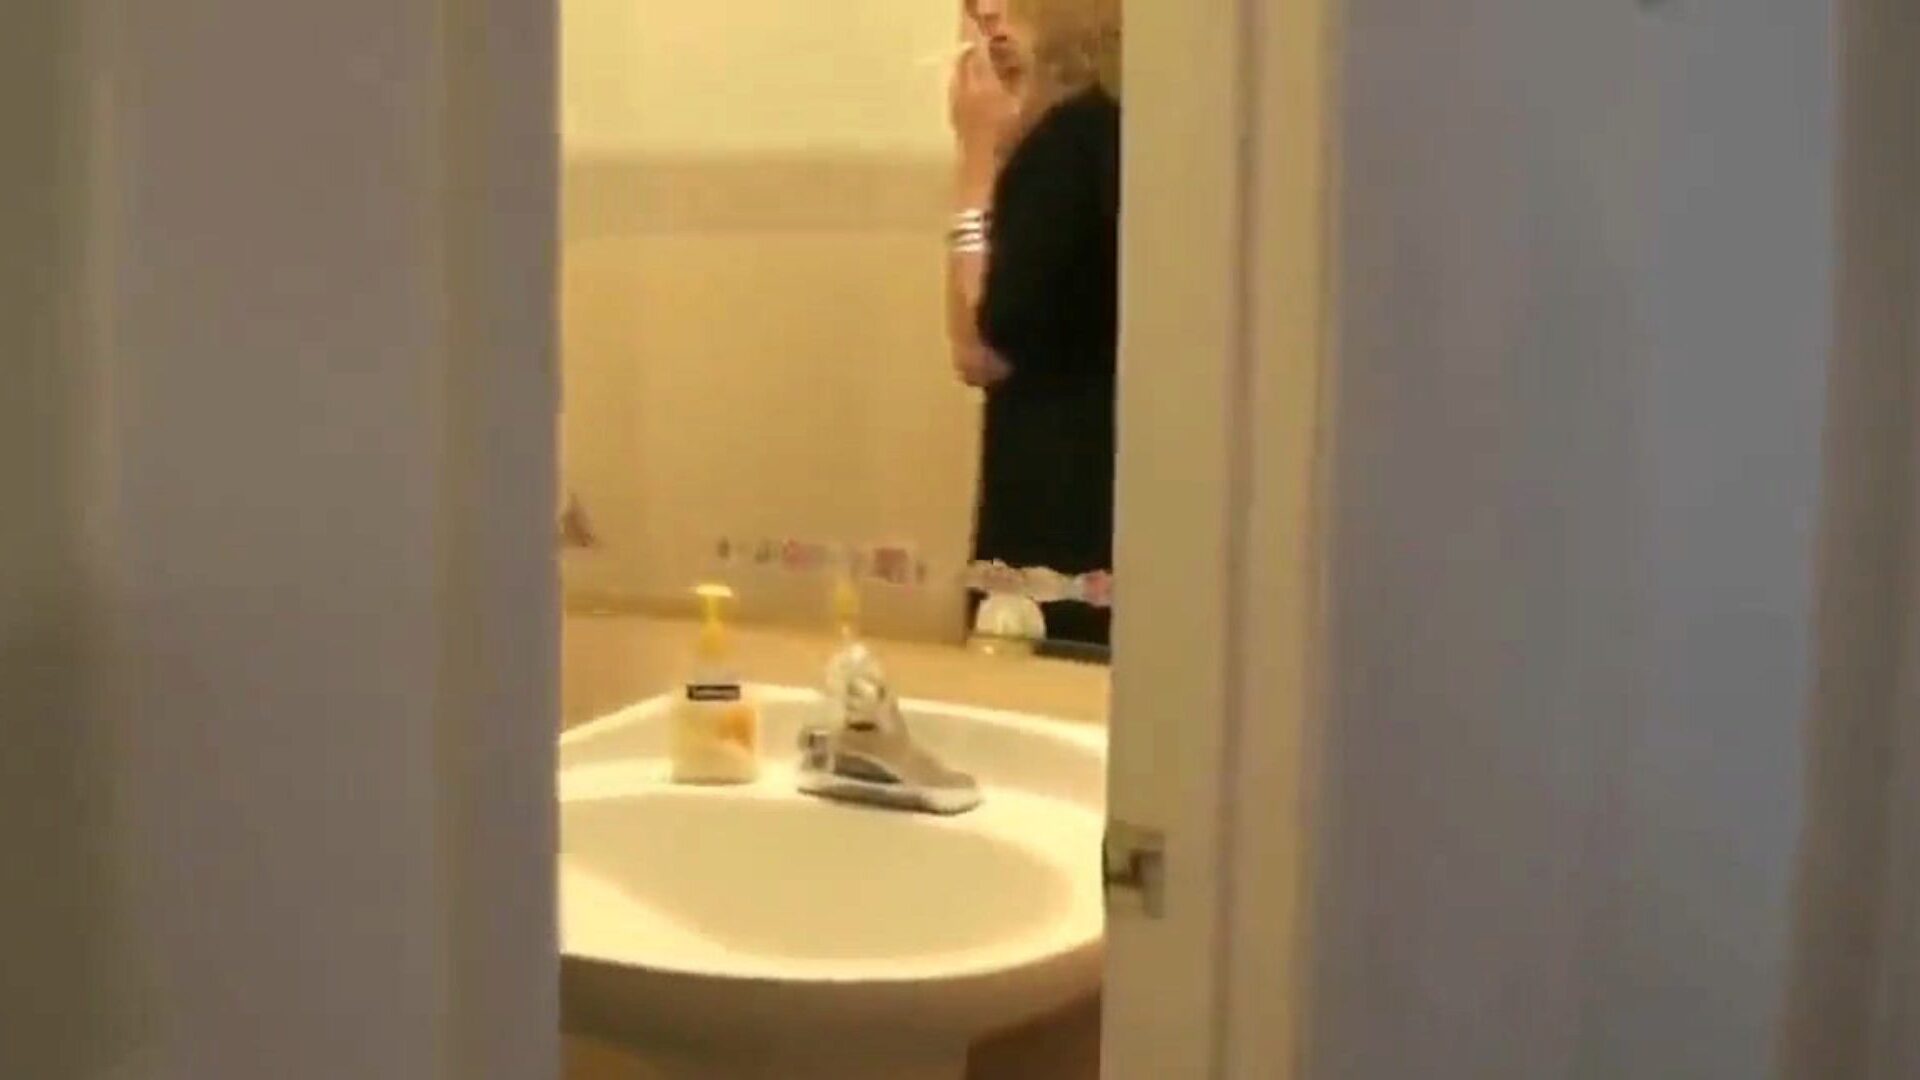 mãe fumando pega filho espionando ela no banheiro ... assista mãe fumando pega filho espionando ela no banheiro episódio de RPG no xhamster - o último bando de xxx mom free & free mobile mom hd pornography clips